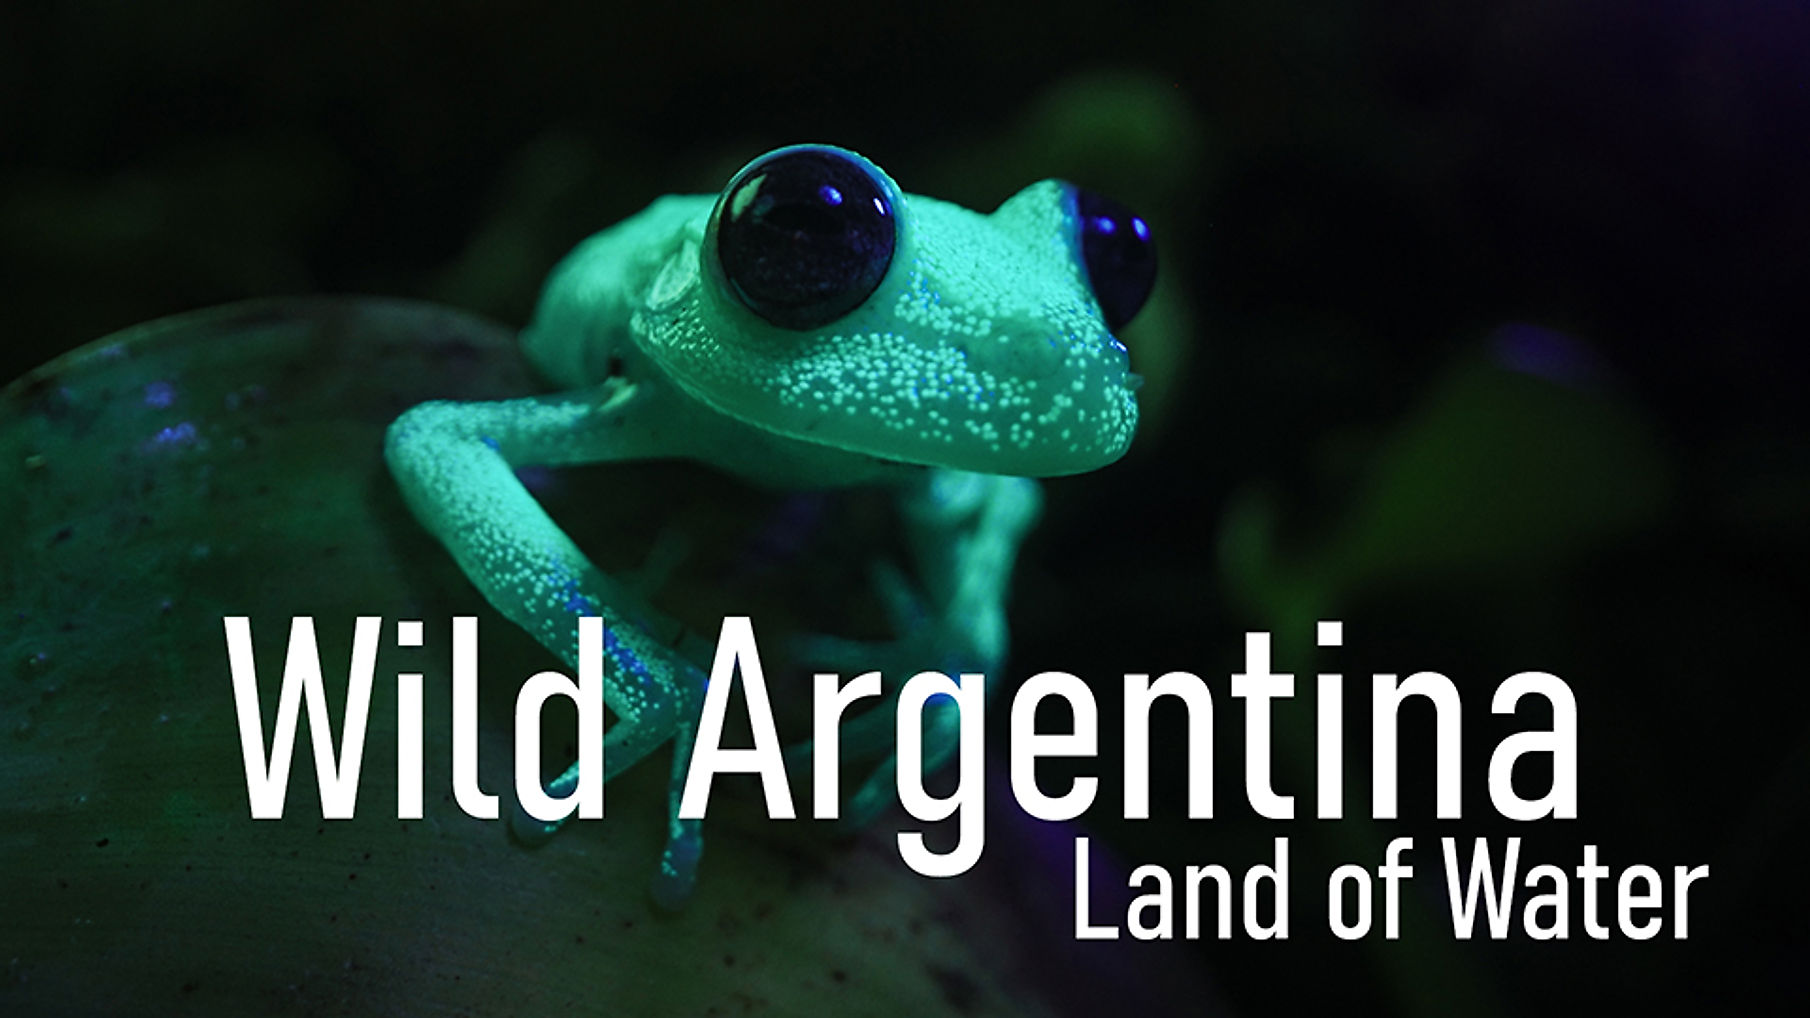 Wild Argentina - Land of Water